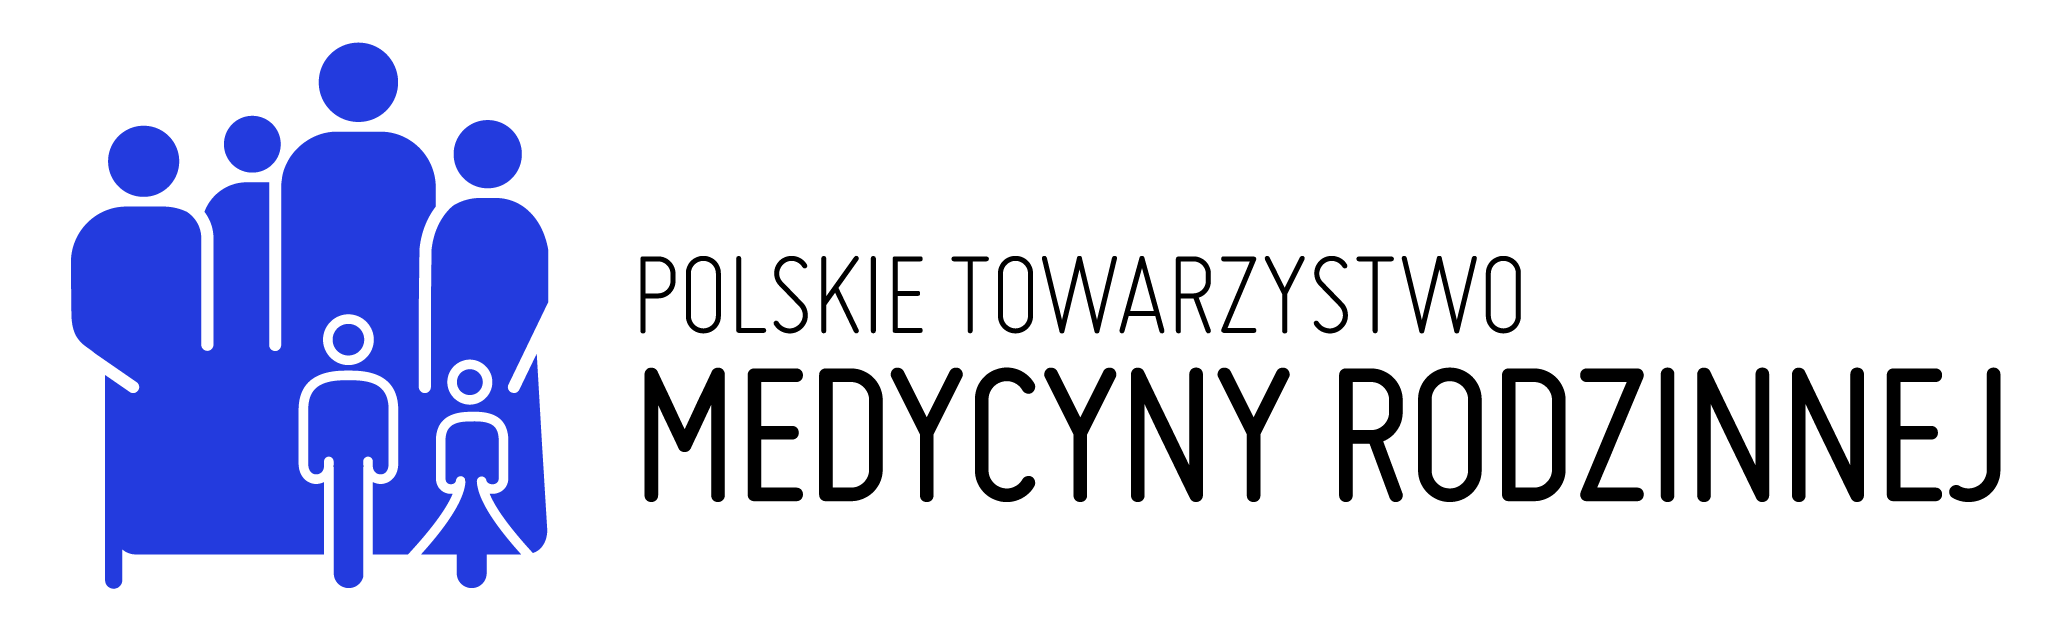 Polskie Towarzystwo Medycyny Rodzinnej